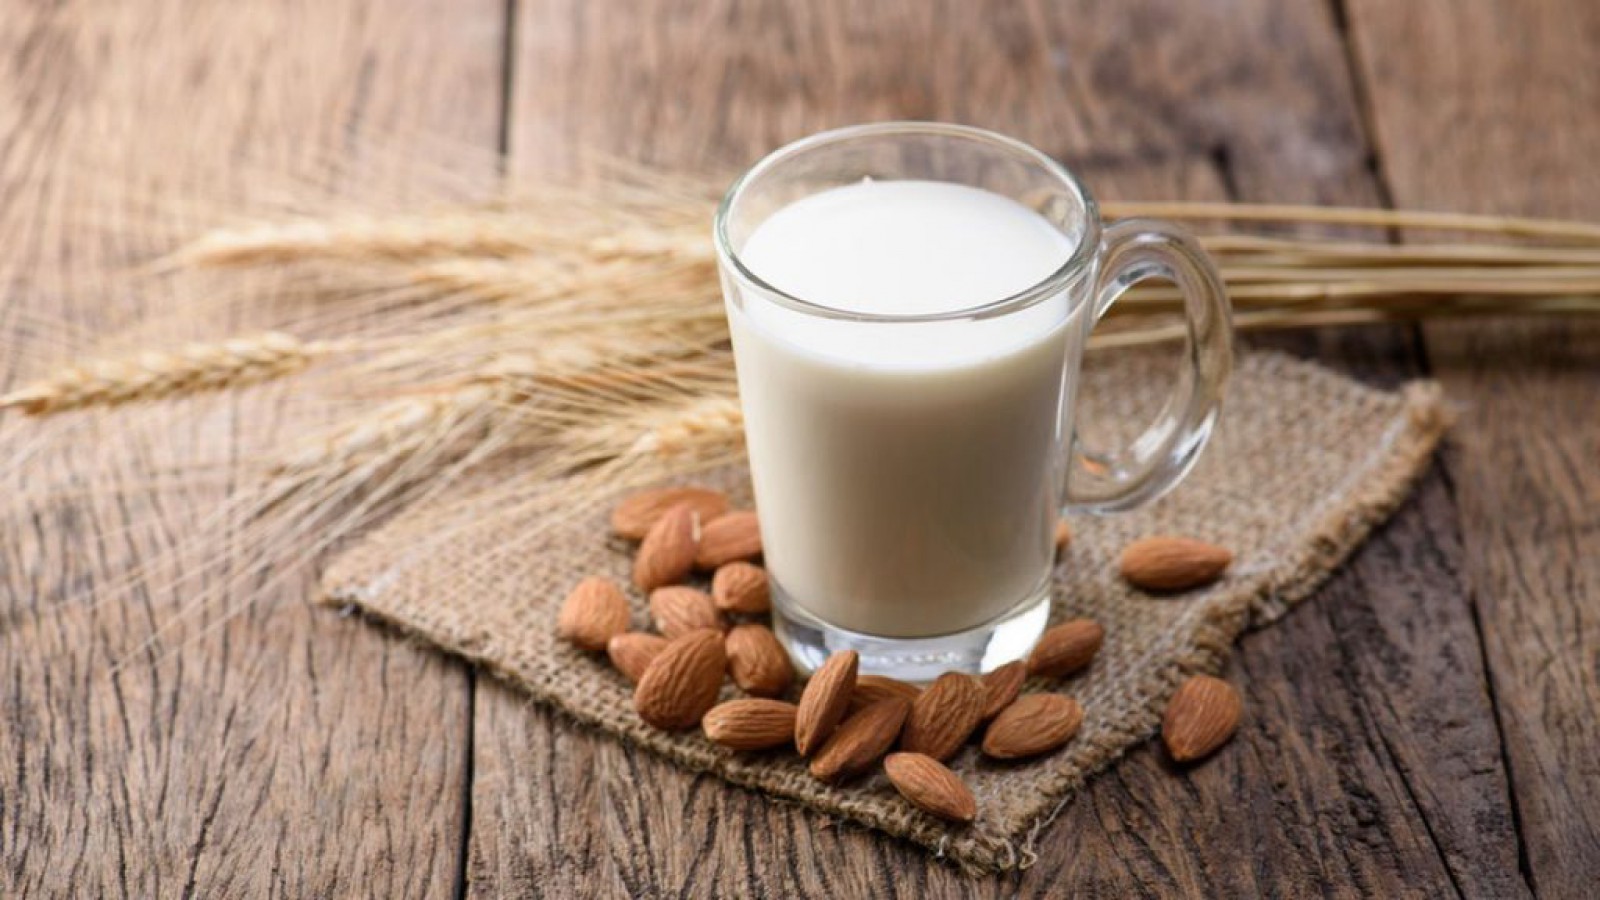 Image 4 Alasan Utama Serta Manfaat Susu Almond Untuk Anak, Salah Satunya Menjaga Kesehatan Tulang